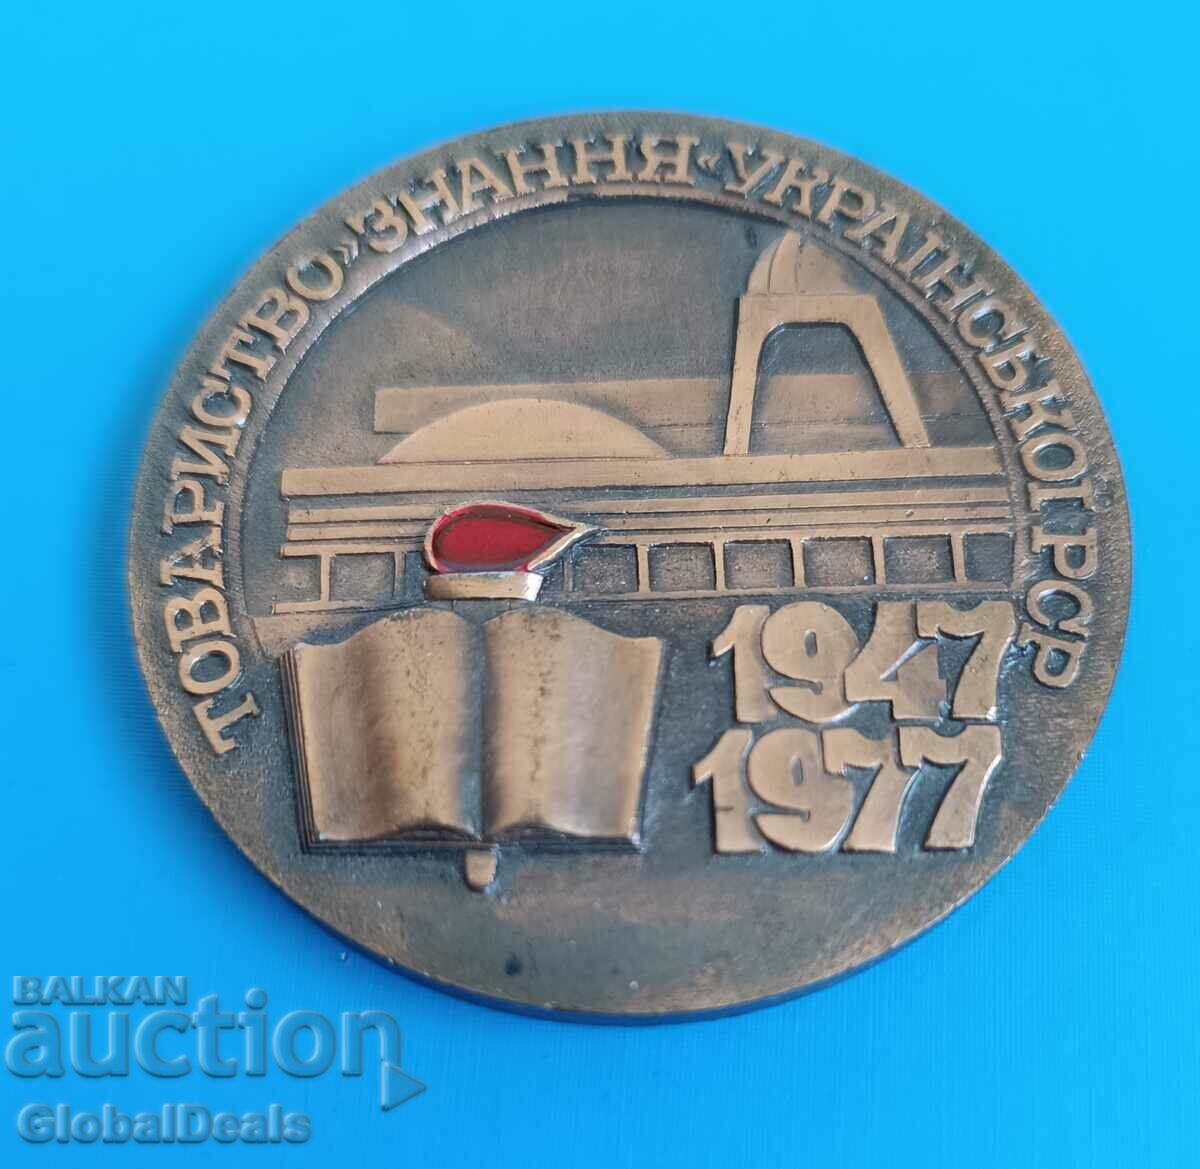 1ο BZC - Μετάλλιο, Πλακέτα 30 χρόνια φιλίας με την Ουκρανική ΕΣΣΔ